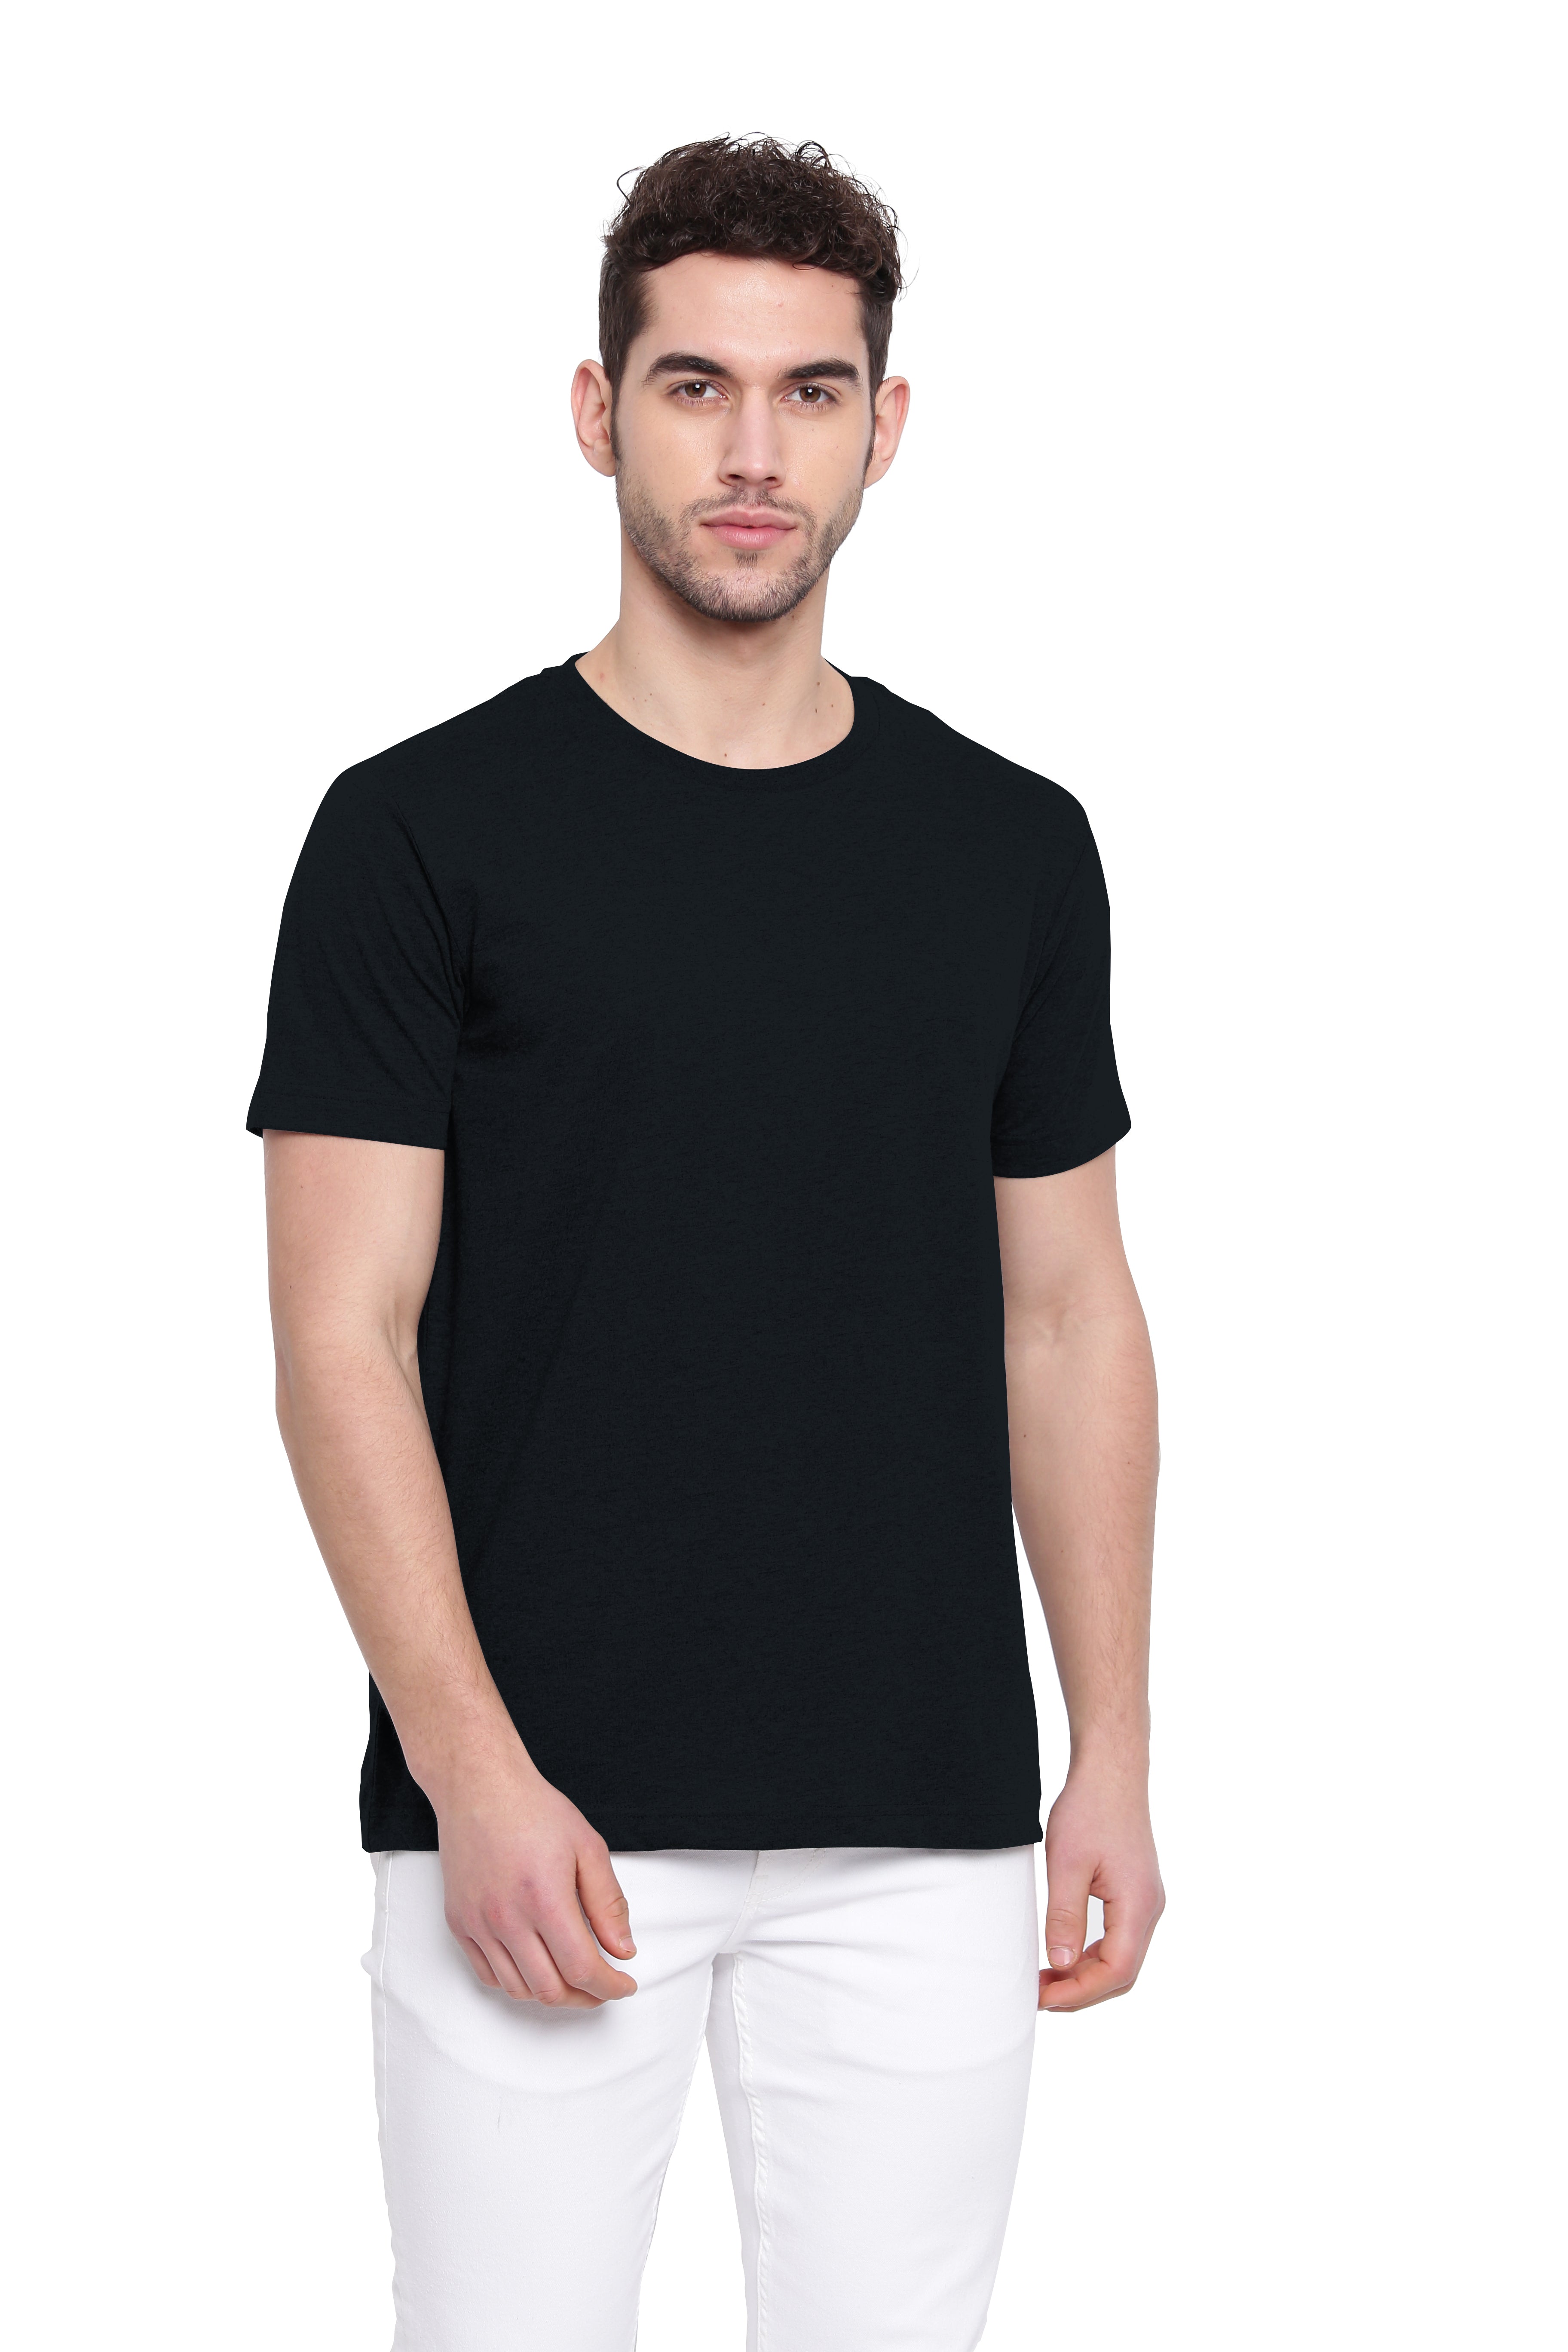 Poomer Casual T-Shirt - Black – Poomer Clothing Company